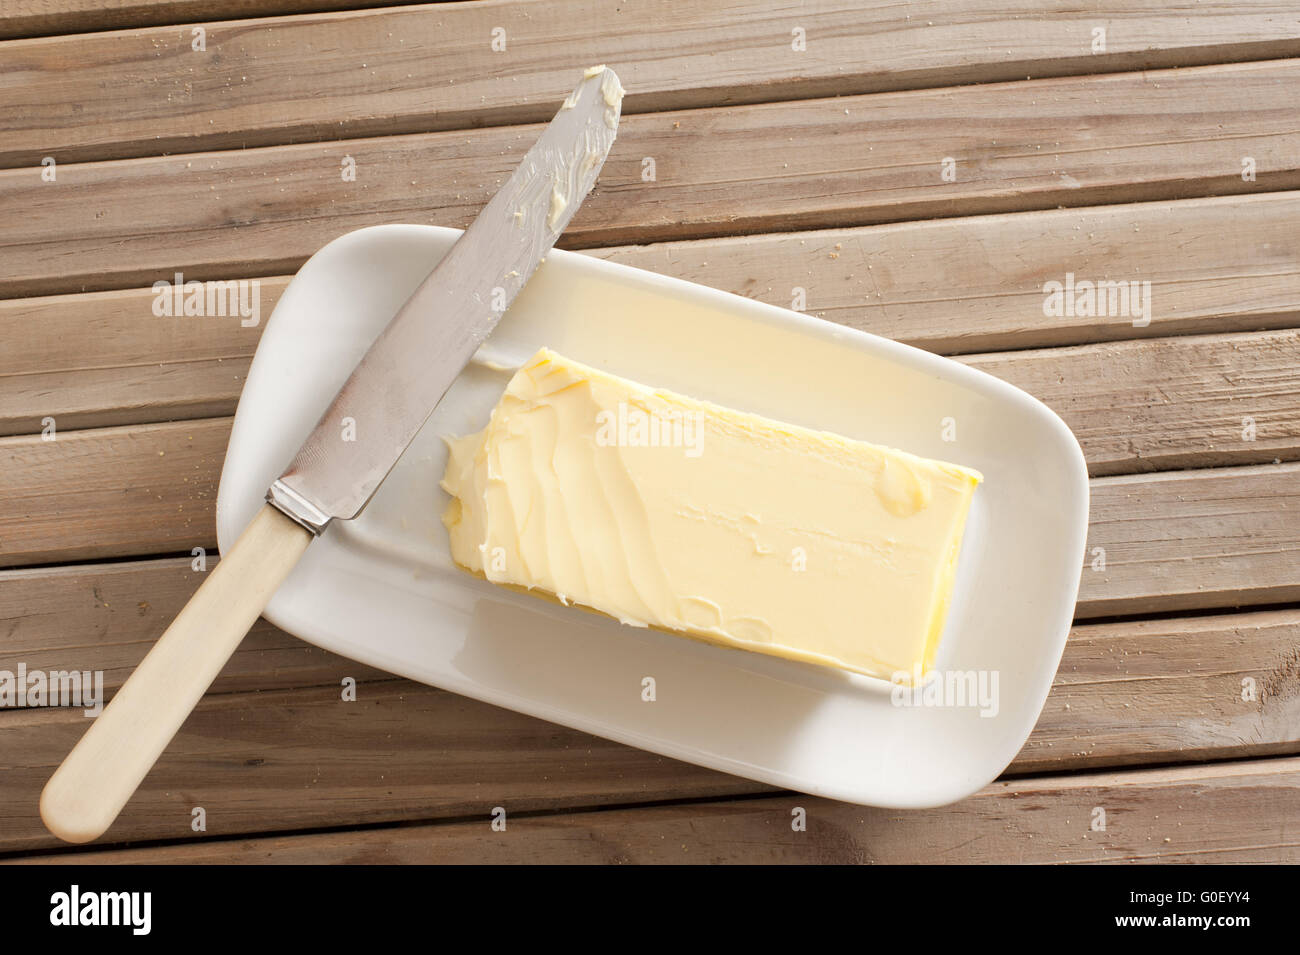 Le beurre frais de la ferme de Pat sur un plat Banque D'Images